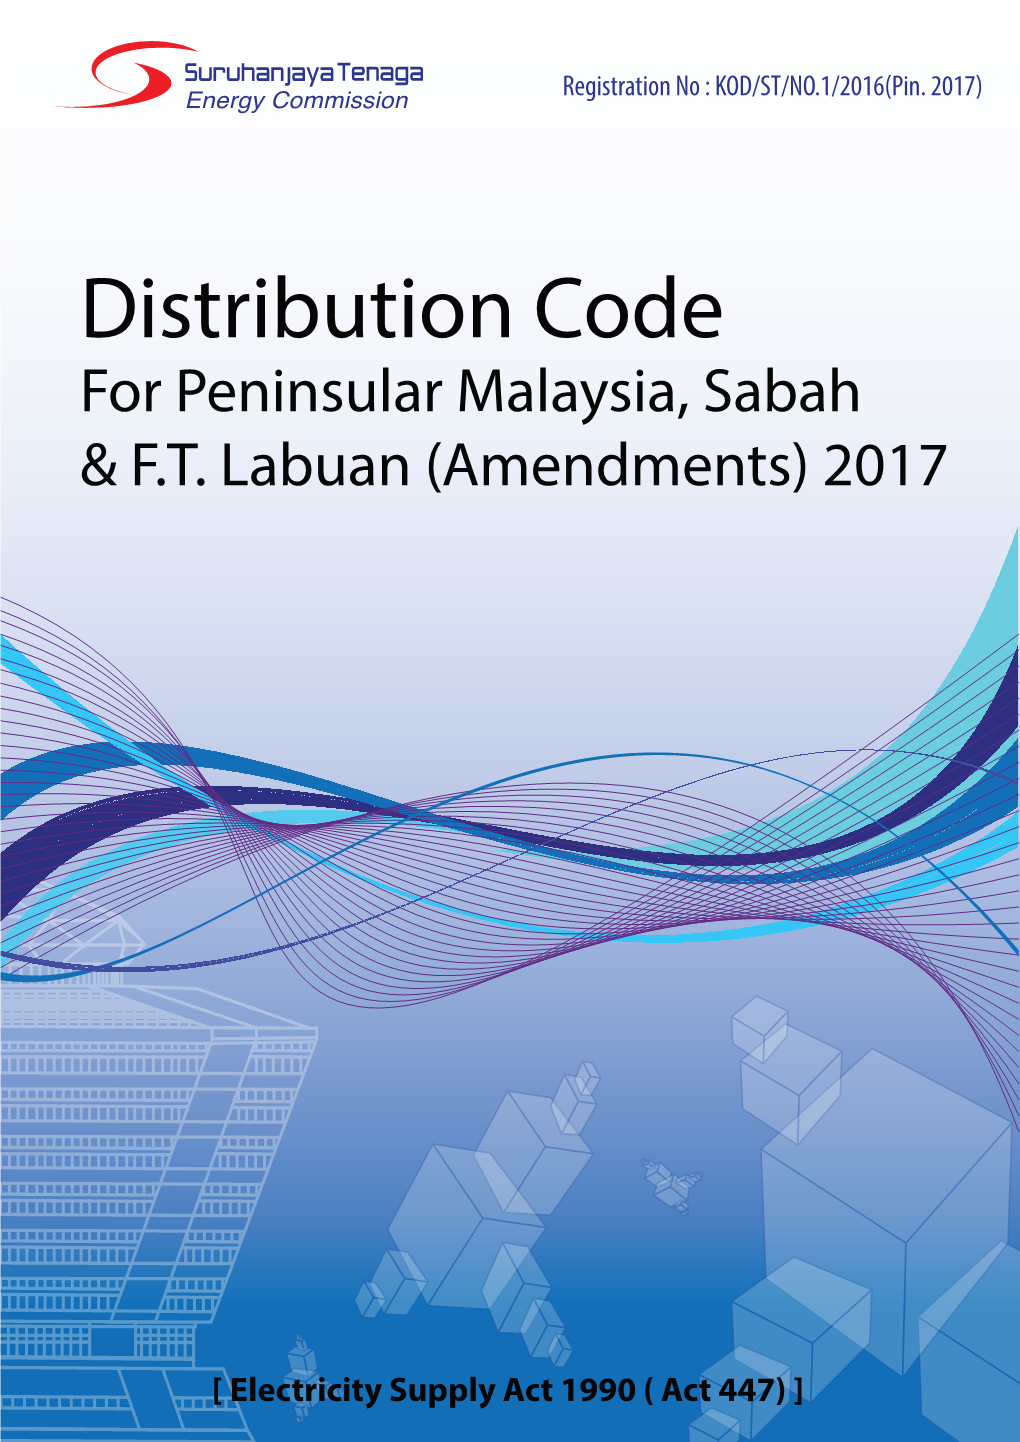 Distribution Code for Peninsular Malaysia, Sabah & F.T. Labuan